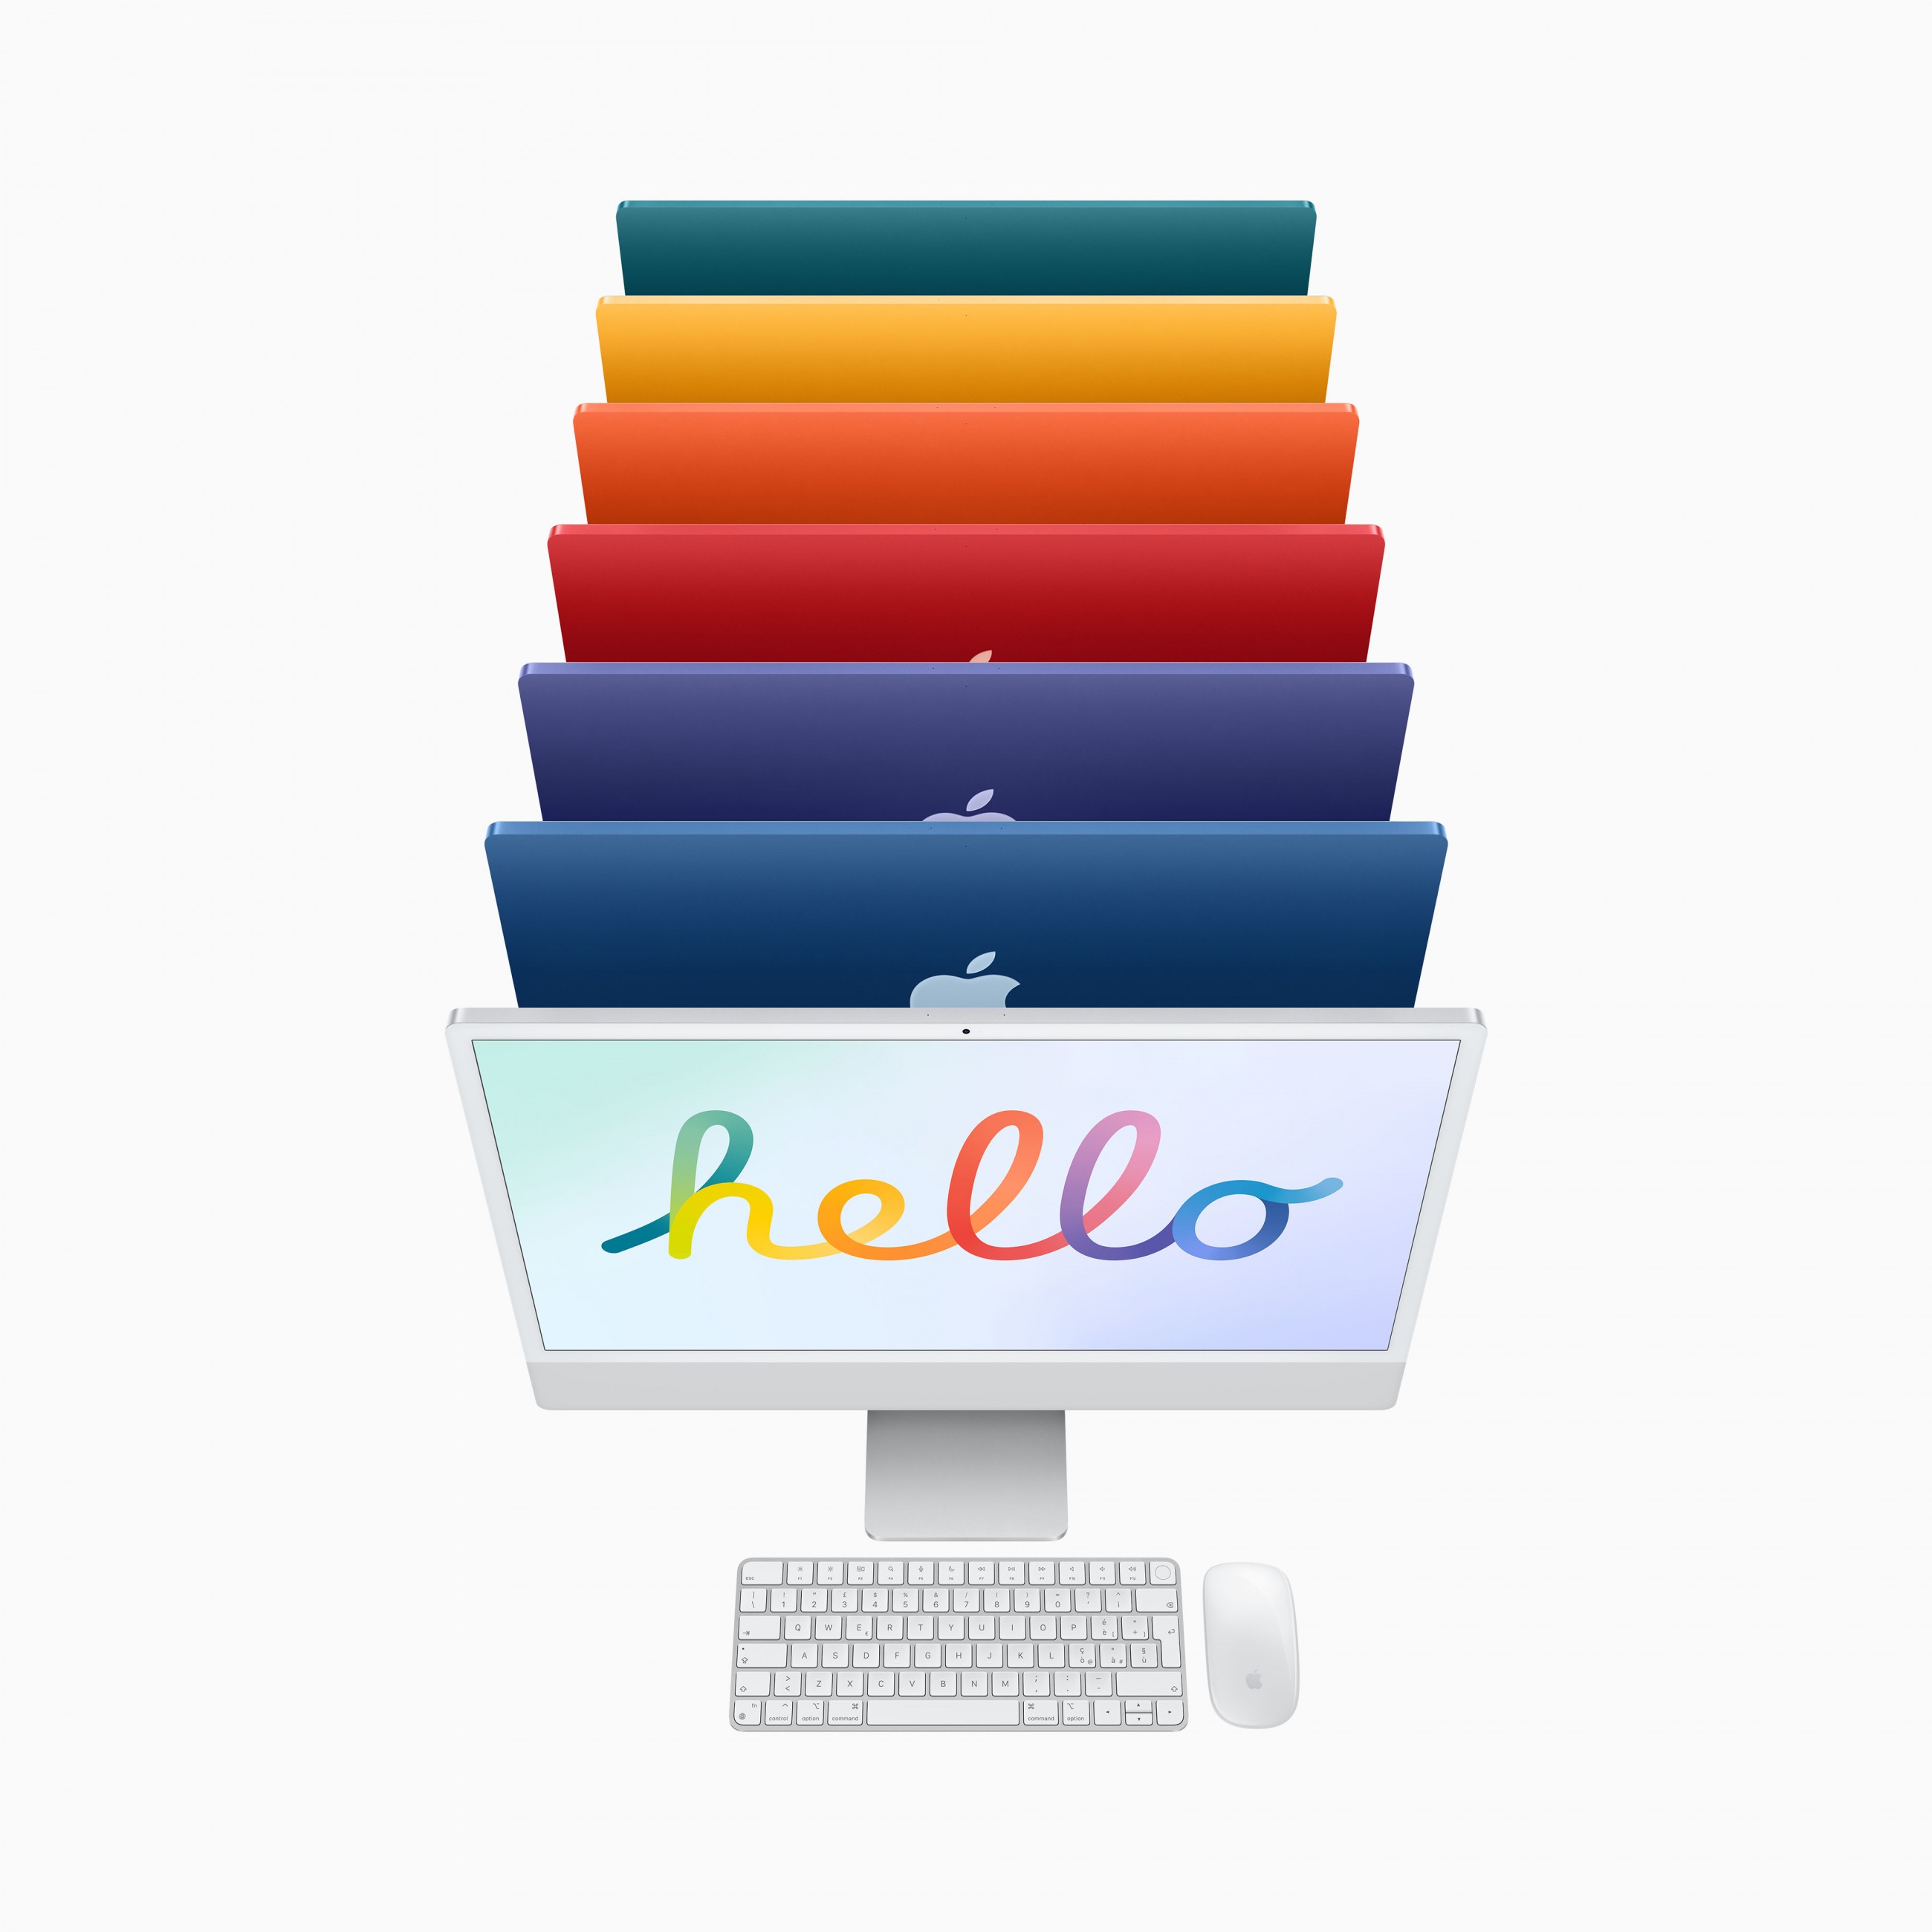 Apple iMac Apple M 61 cm (24 Zoll) 4480 x 2520 Pixel 8 GB 256 GB SSD All-in-One-PC macOS Big Sur Wi-Fi 6 (802.11ax) Grün